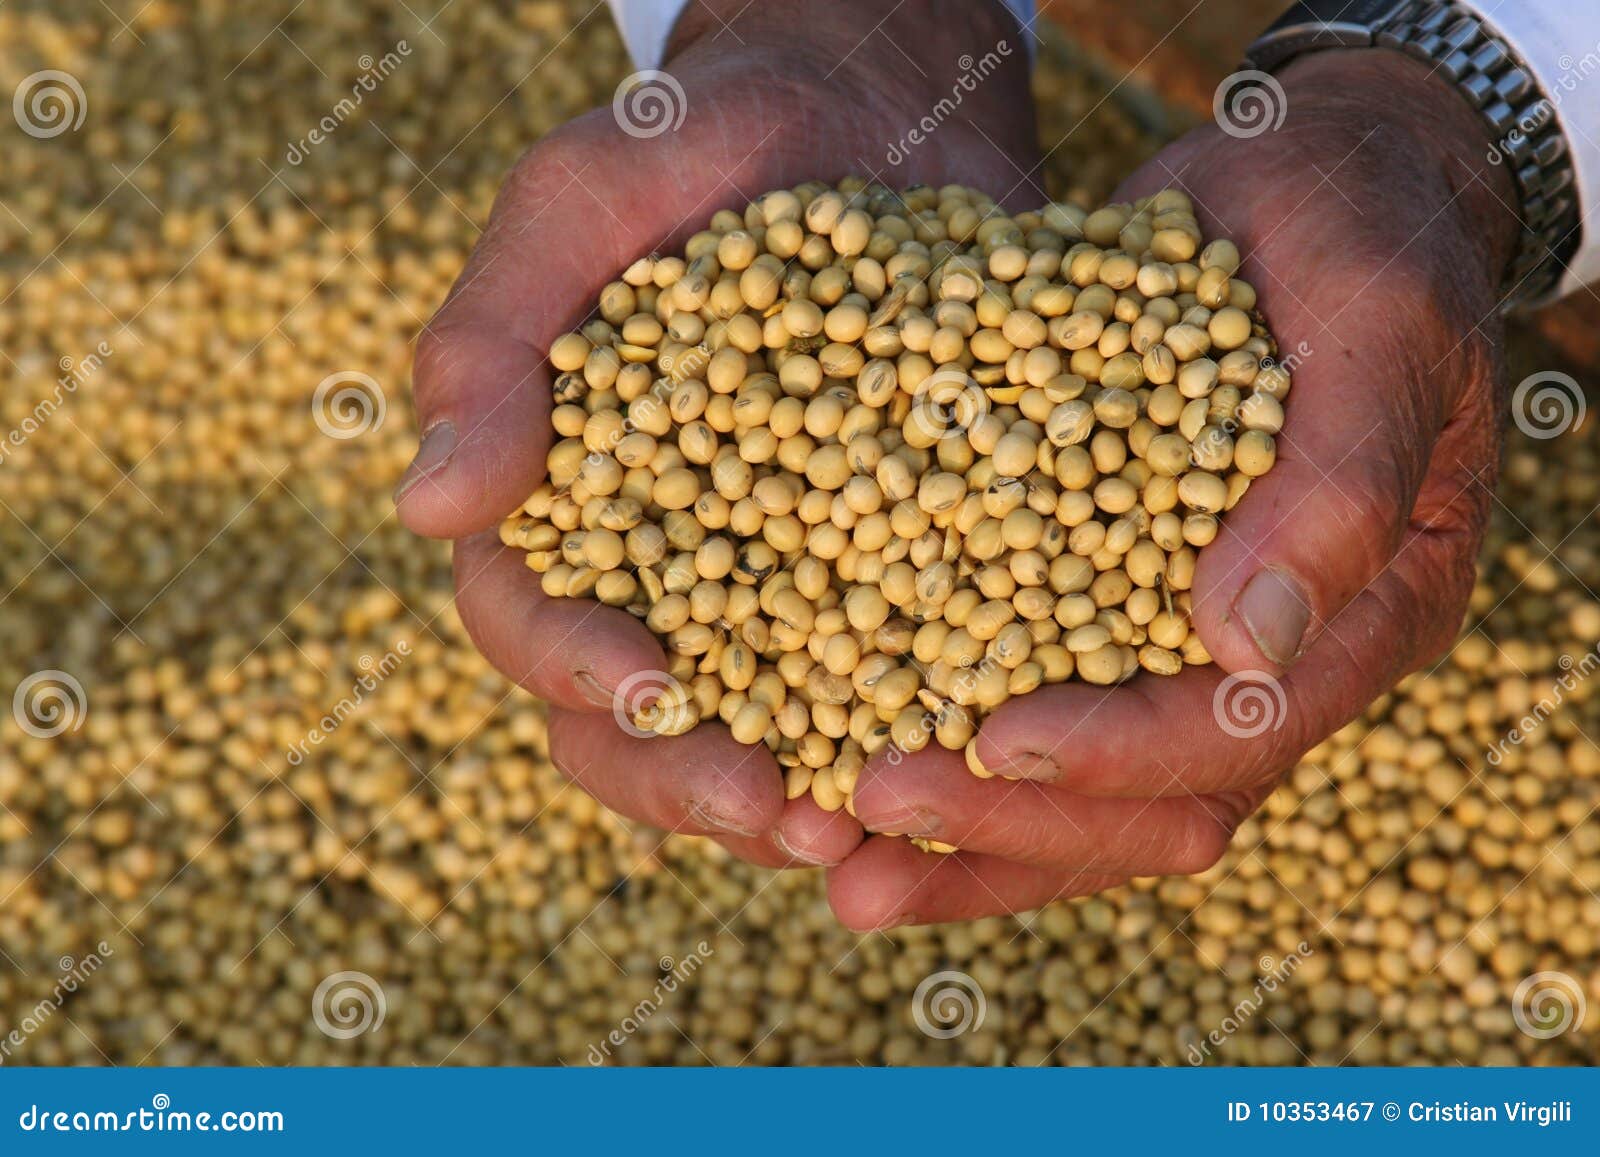 hands bring soya